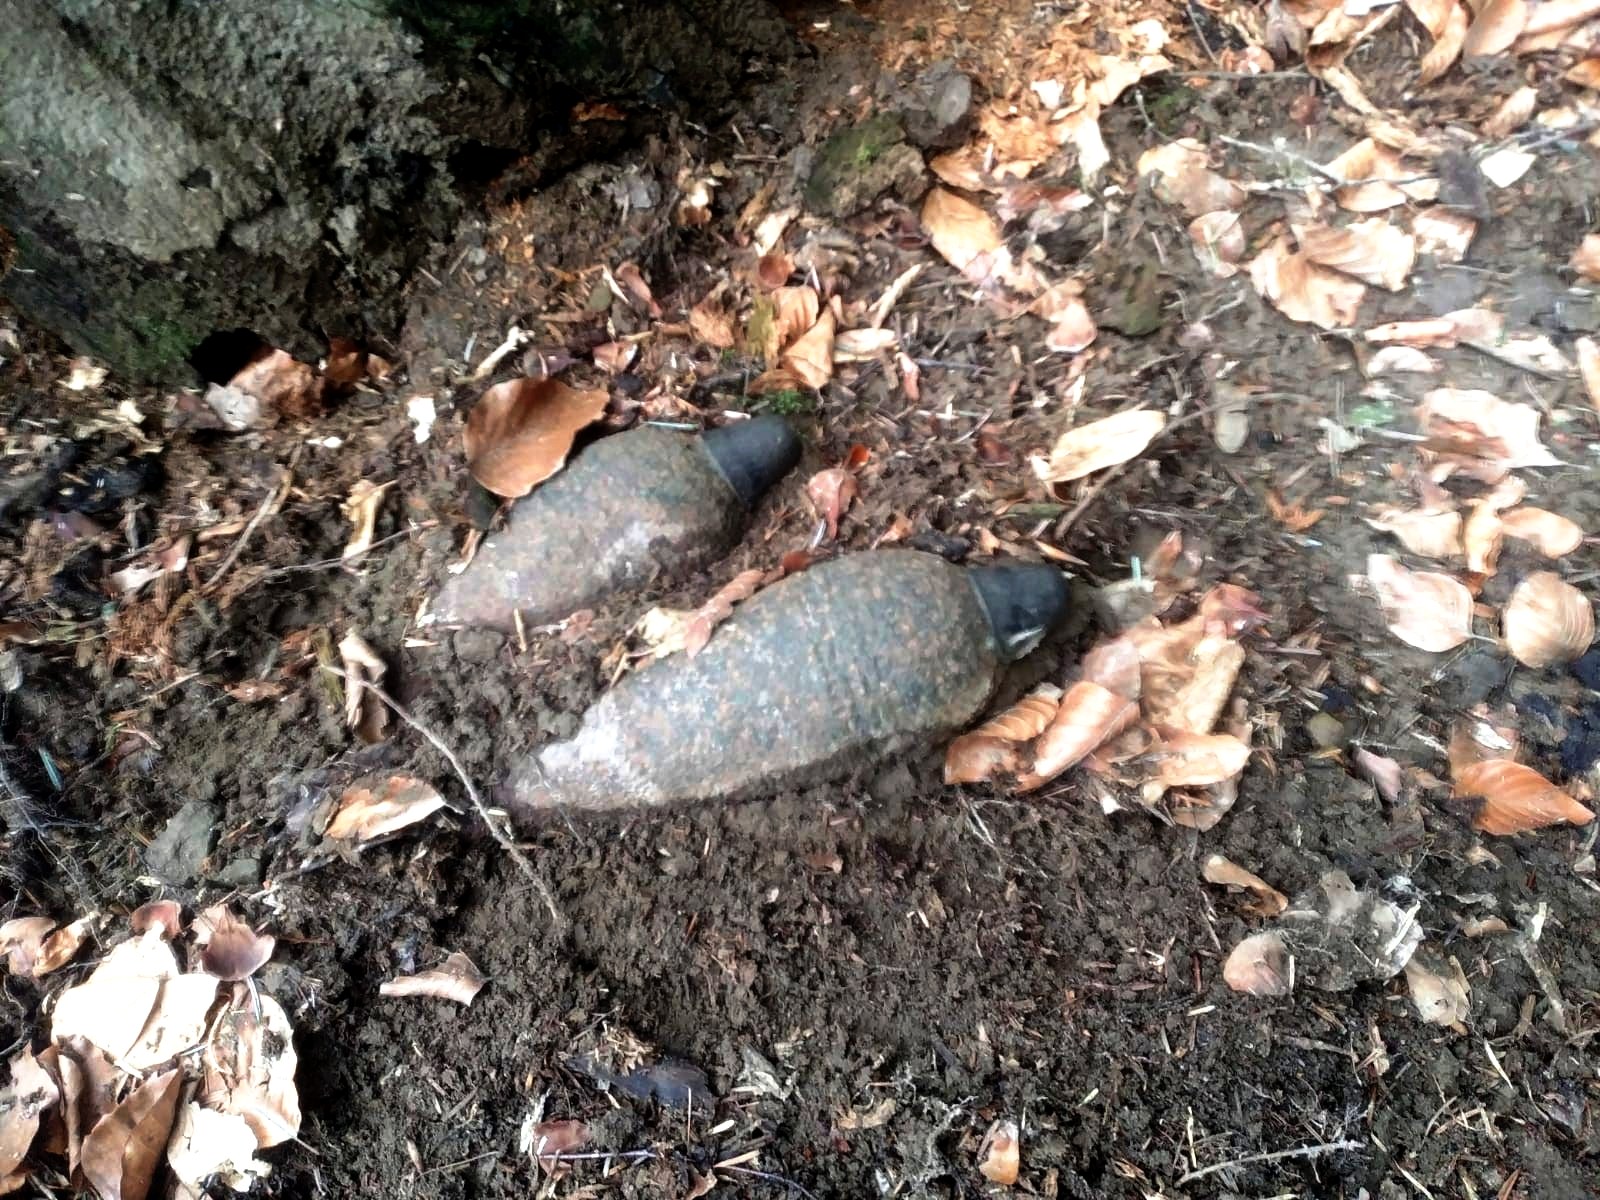 Niewybuchy znalezione w lesie - źródło: KMP Nowy Sącz